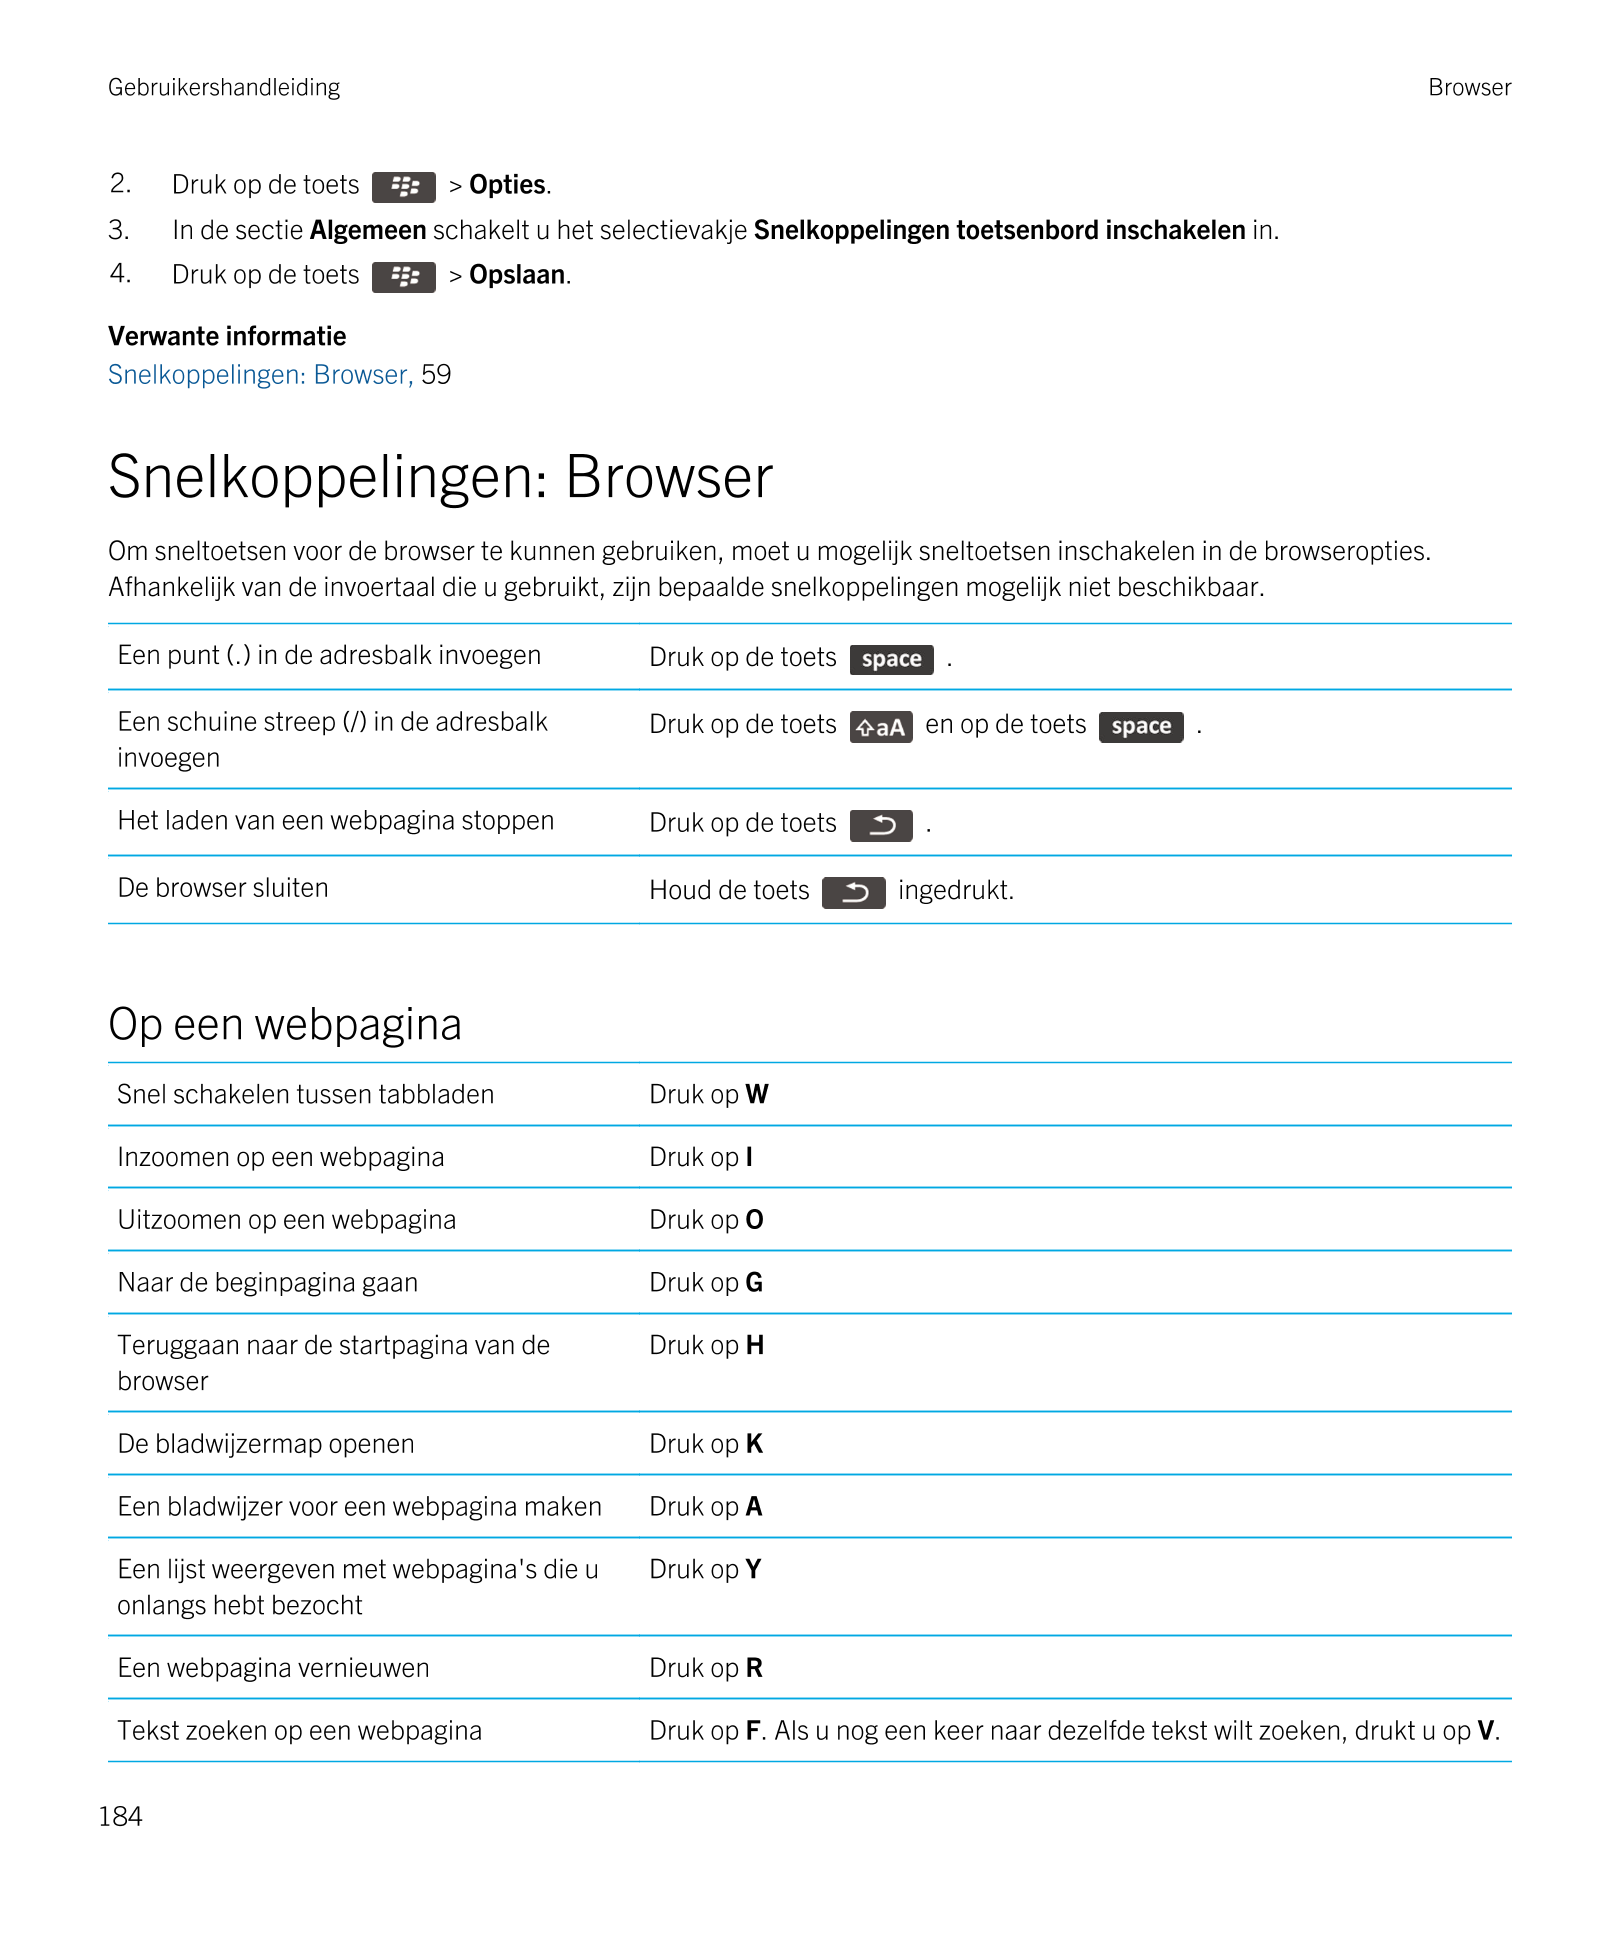 Gebruikershandleiding Browser
2. Druk op de toets    >  Opties. 
3. In de sectie  Algemeen schakelt u het selectievakje  Snelkop